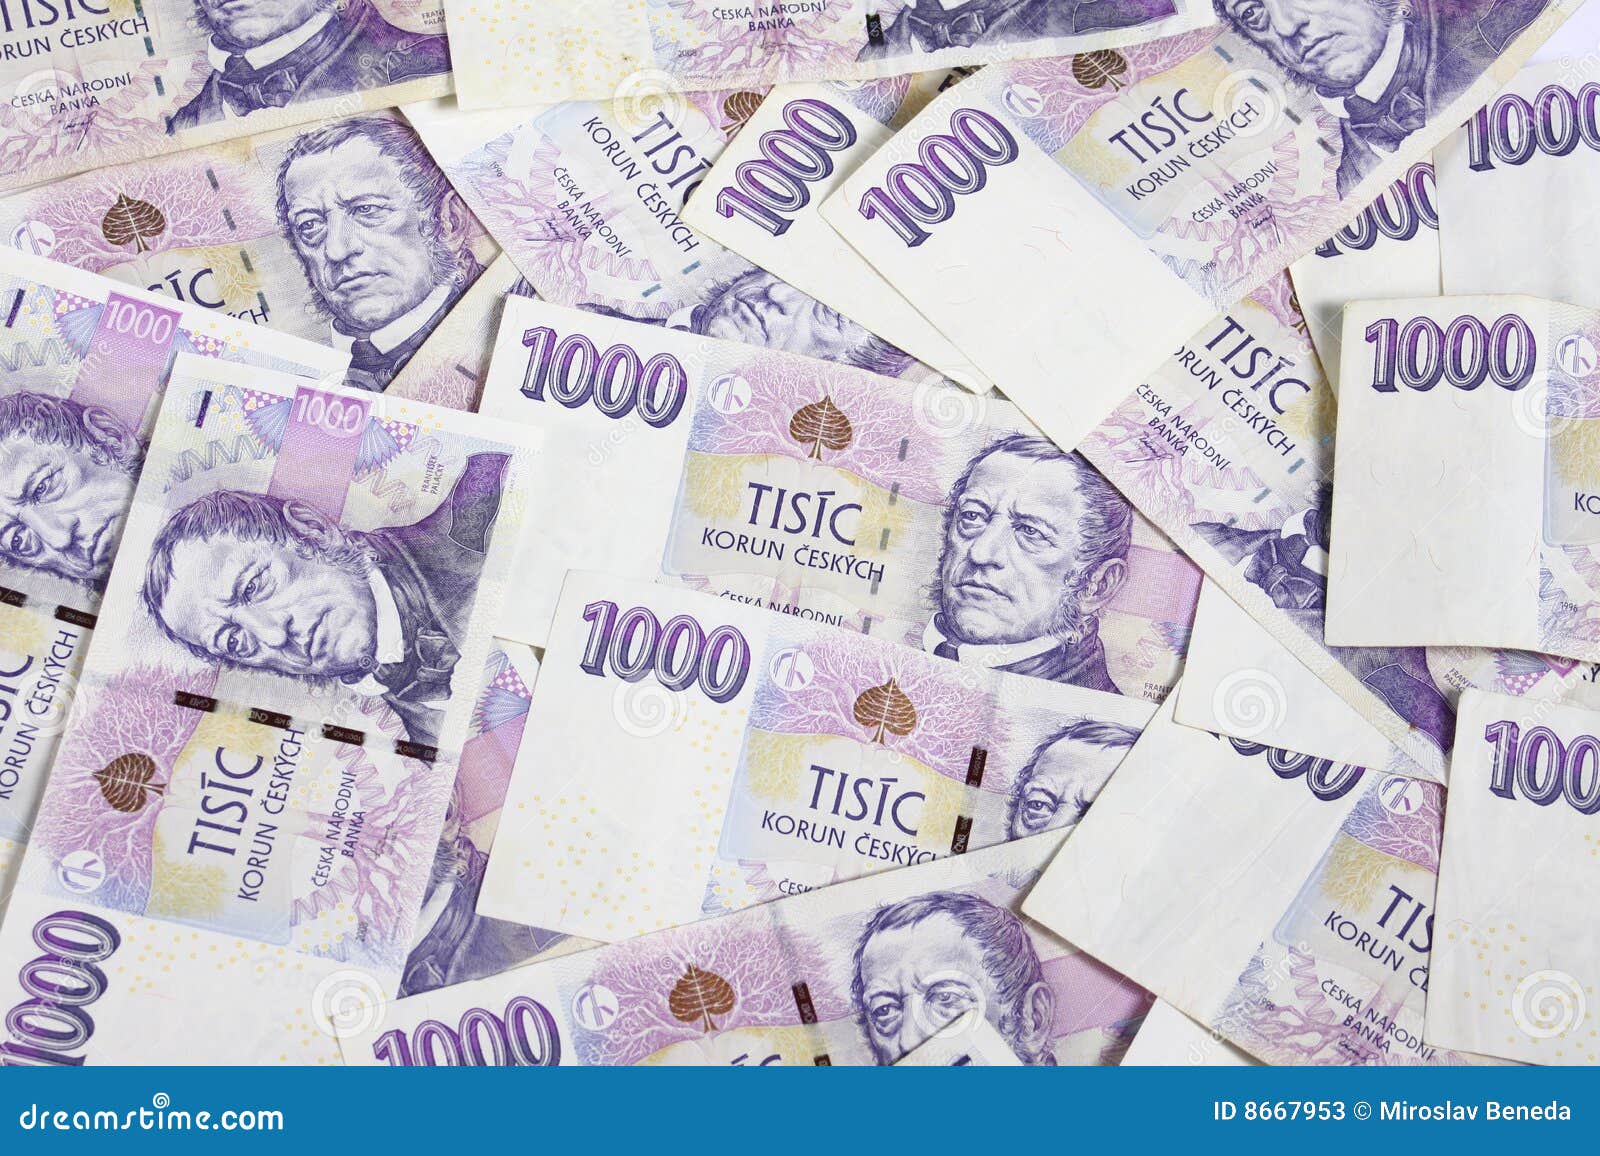 czech money 1000